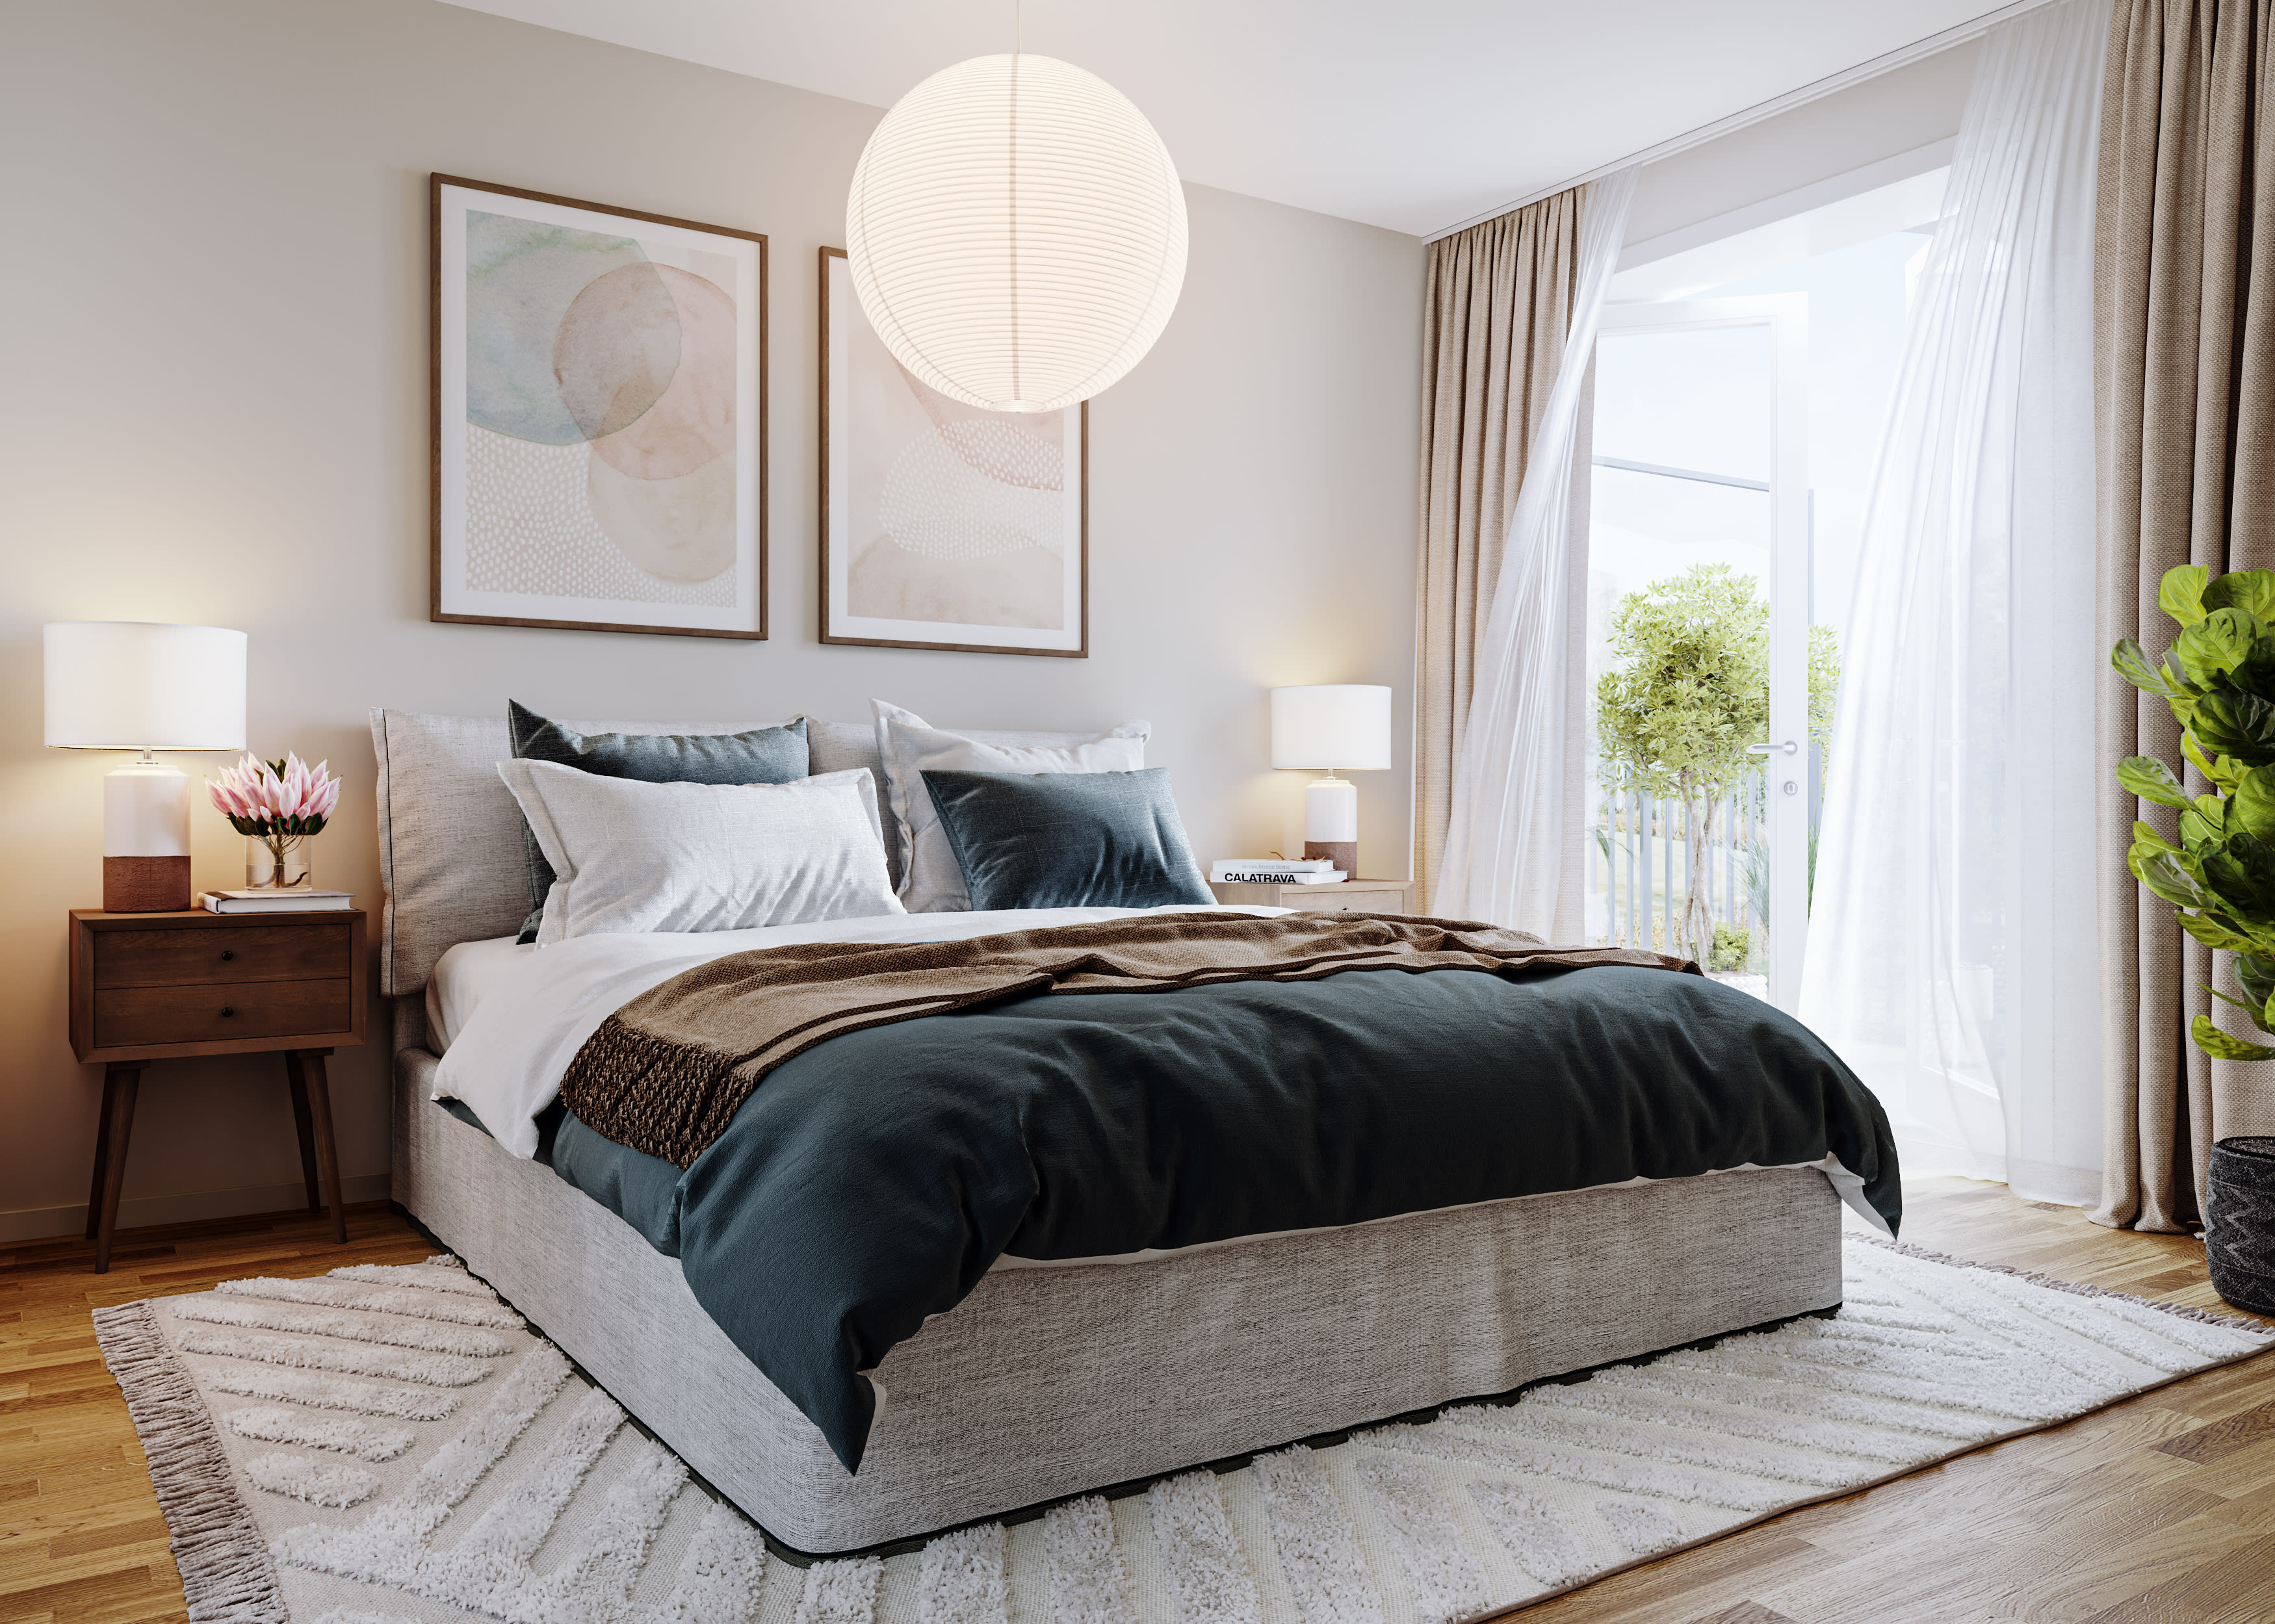 Rymligt sovrum i designlinje ”Sommar” med ekgolv och ljusa väggar i en lätt beigegrå ton. Utgång till balkong mot den trevliga innergården (visionsbild).